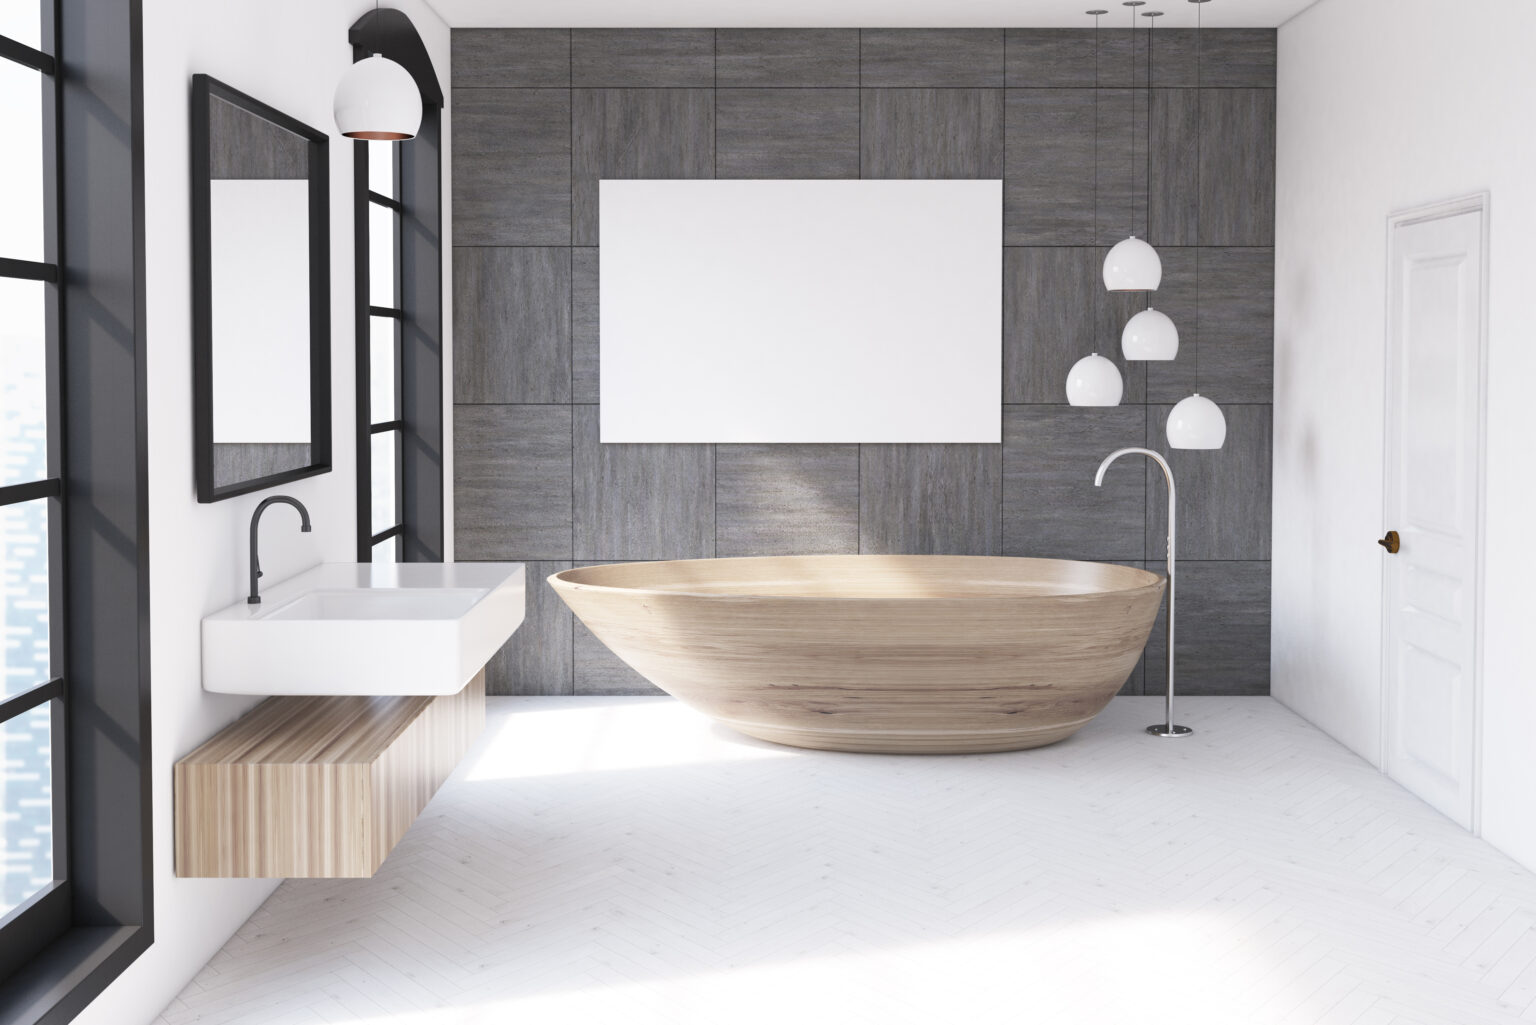 Holzbadewanne: Natürlicher Charme und entspannender Luxus im Badezimmer